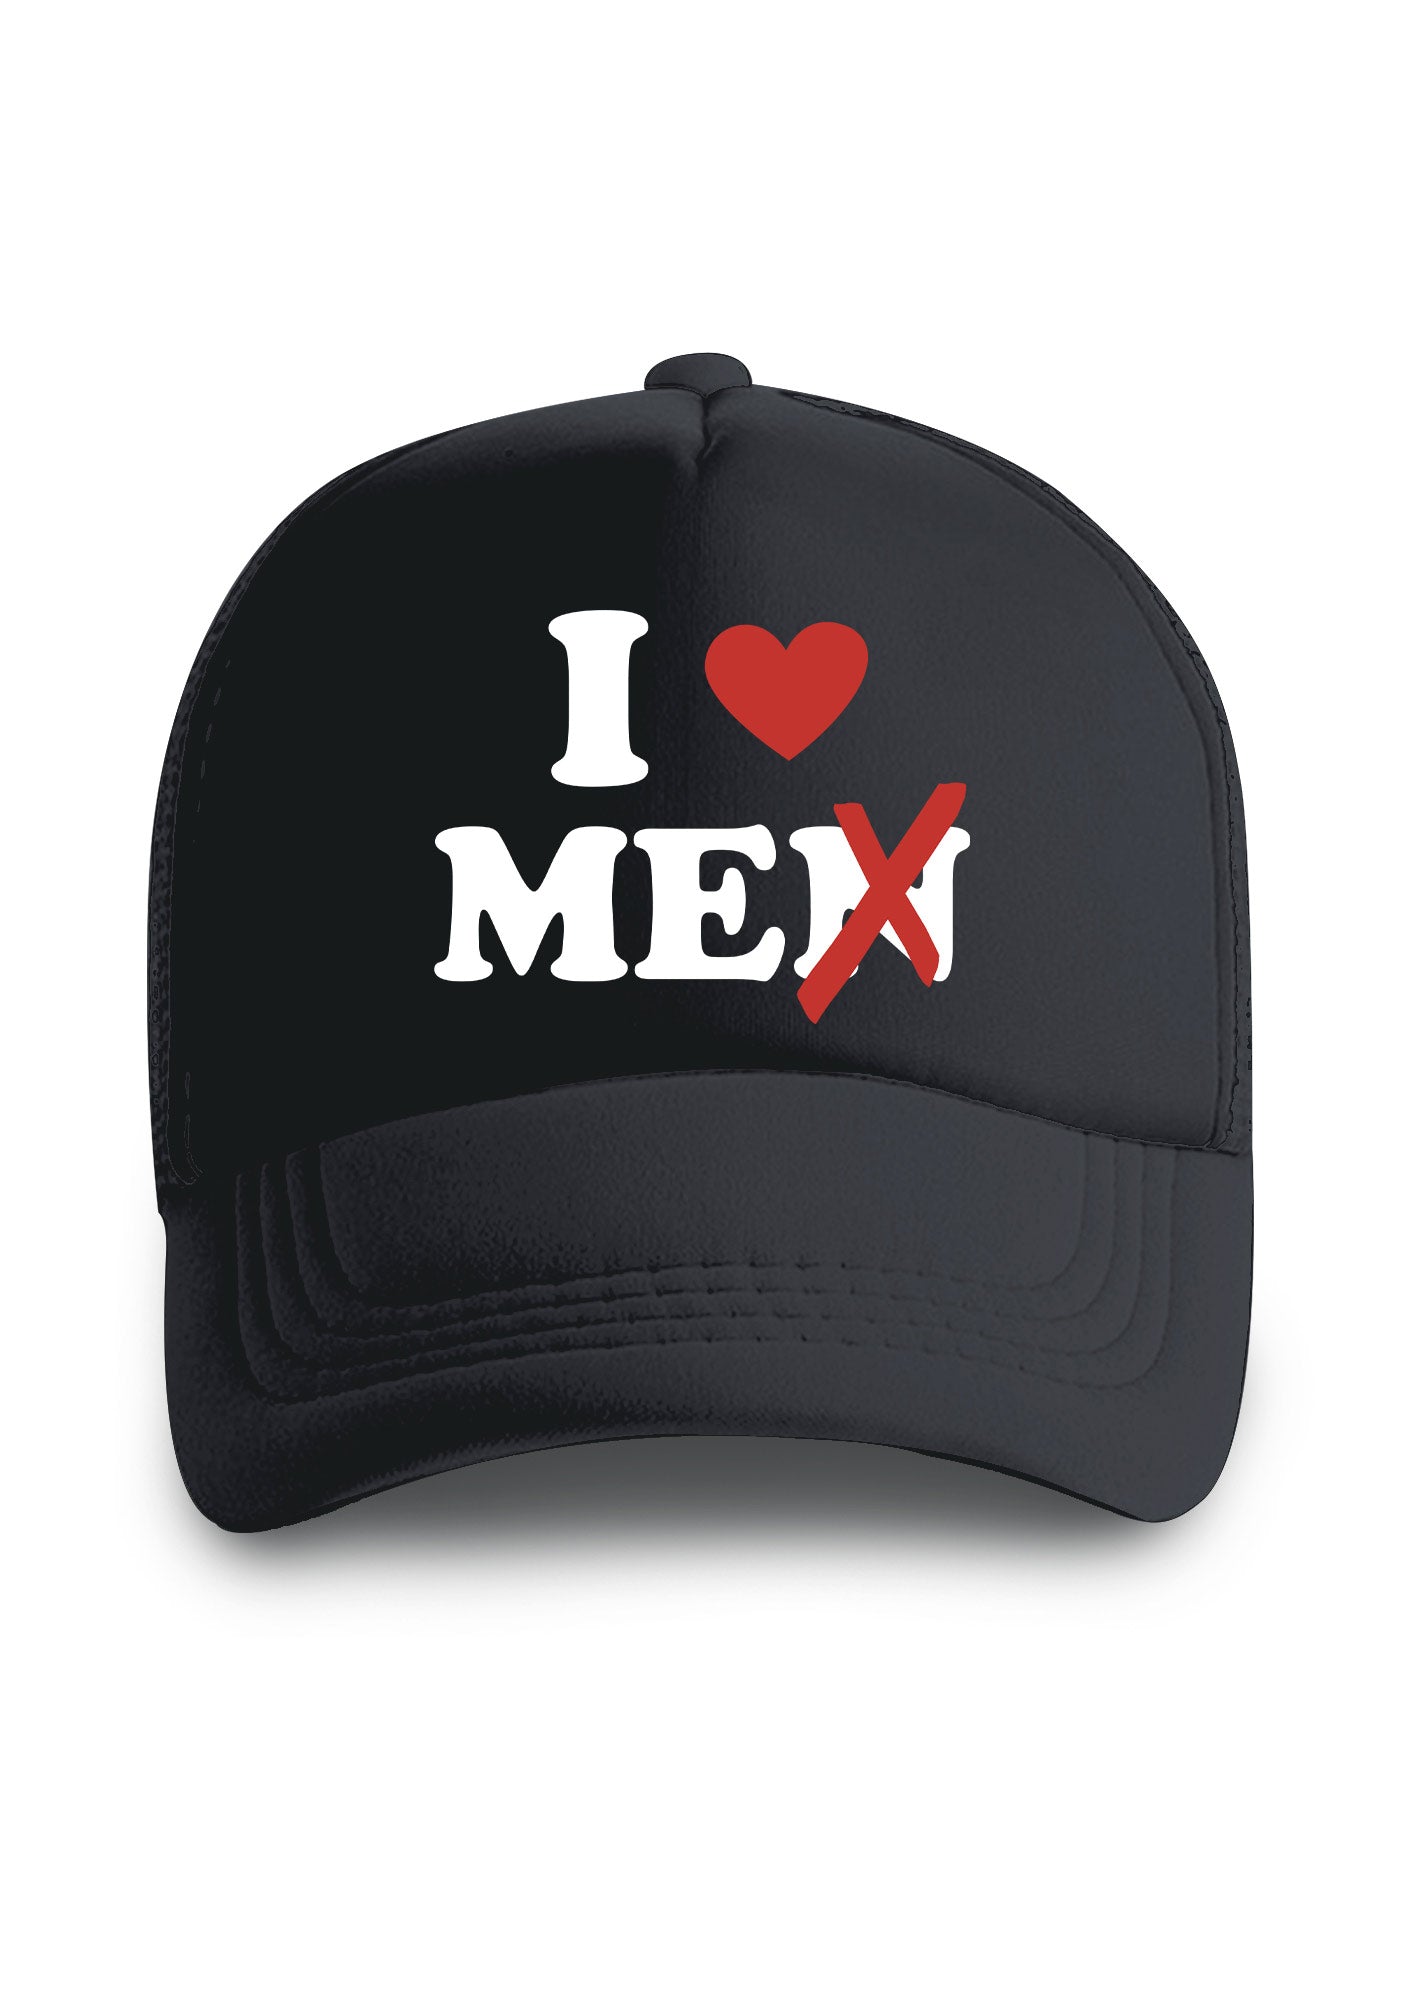 Love Me Not Men Trucker Hat